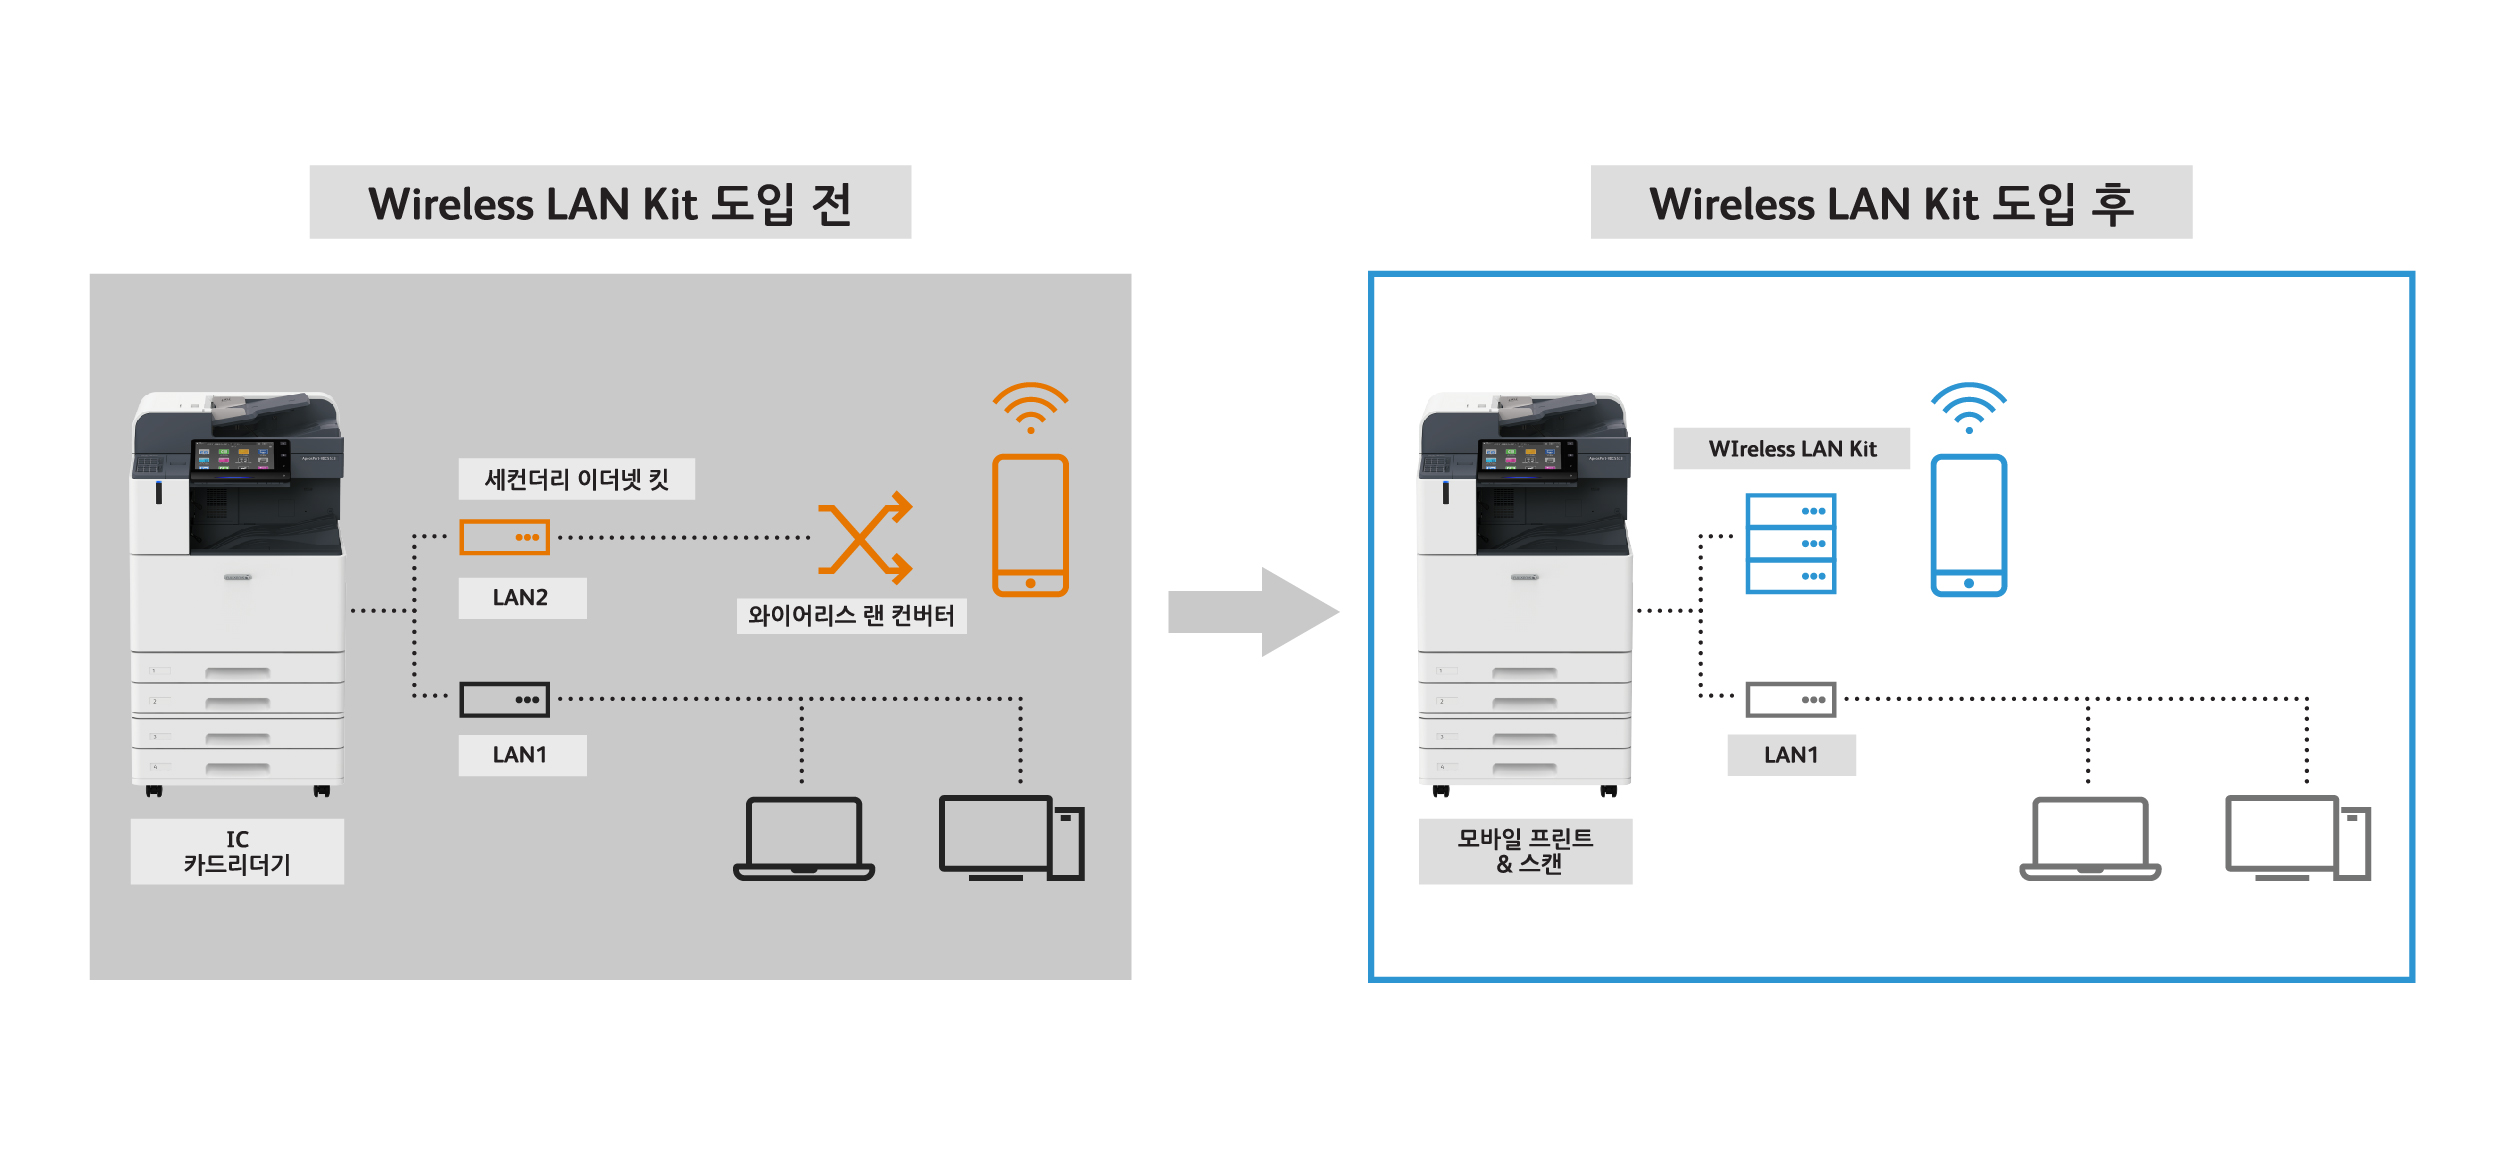 Wireless LAN kit